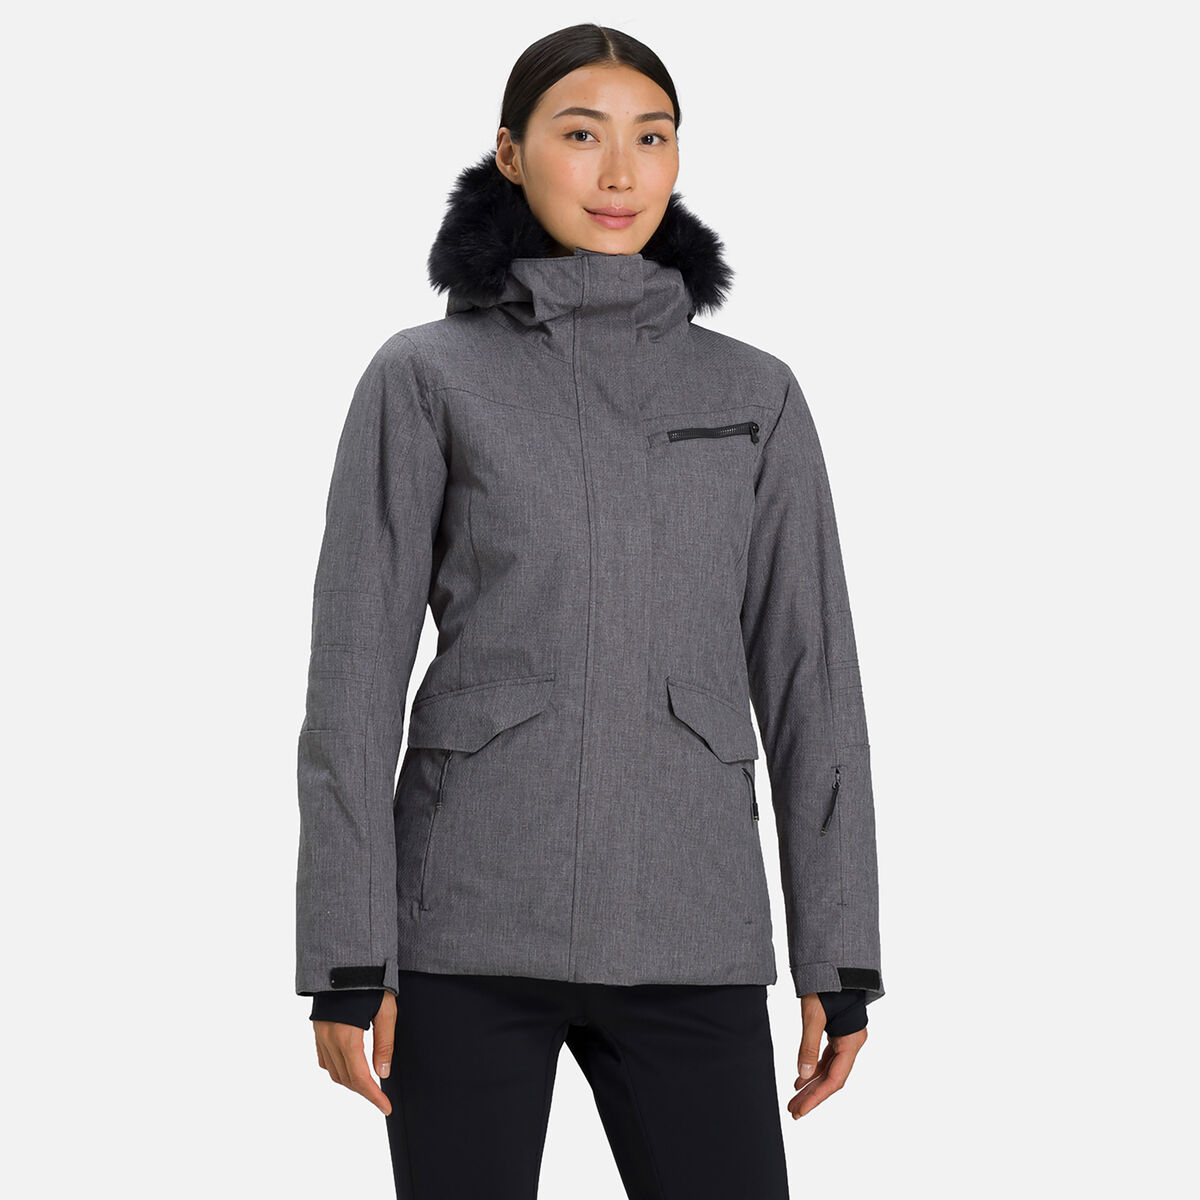 Women's Heather ski/snowaboard jacket